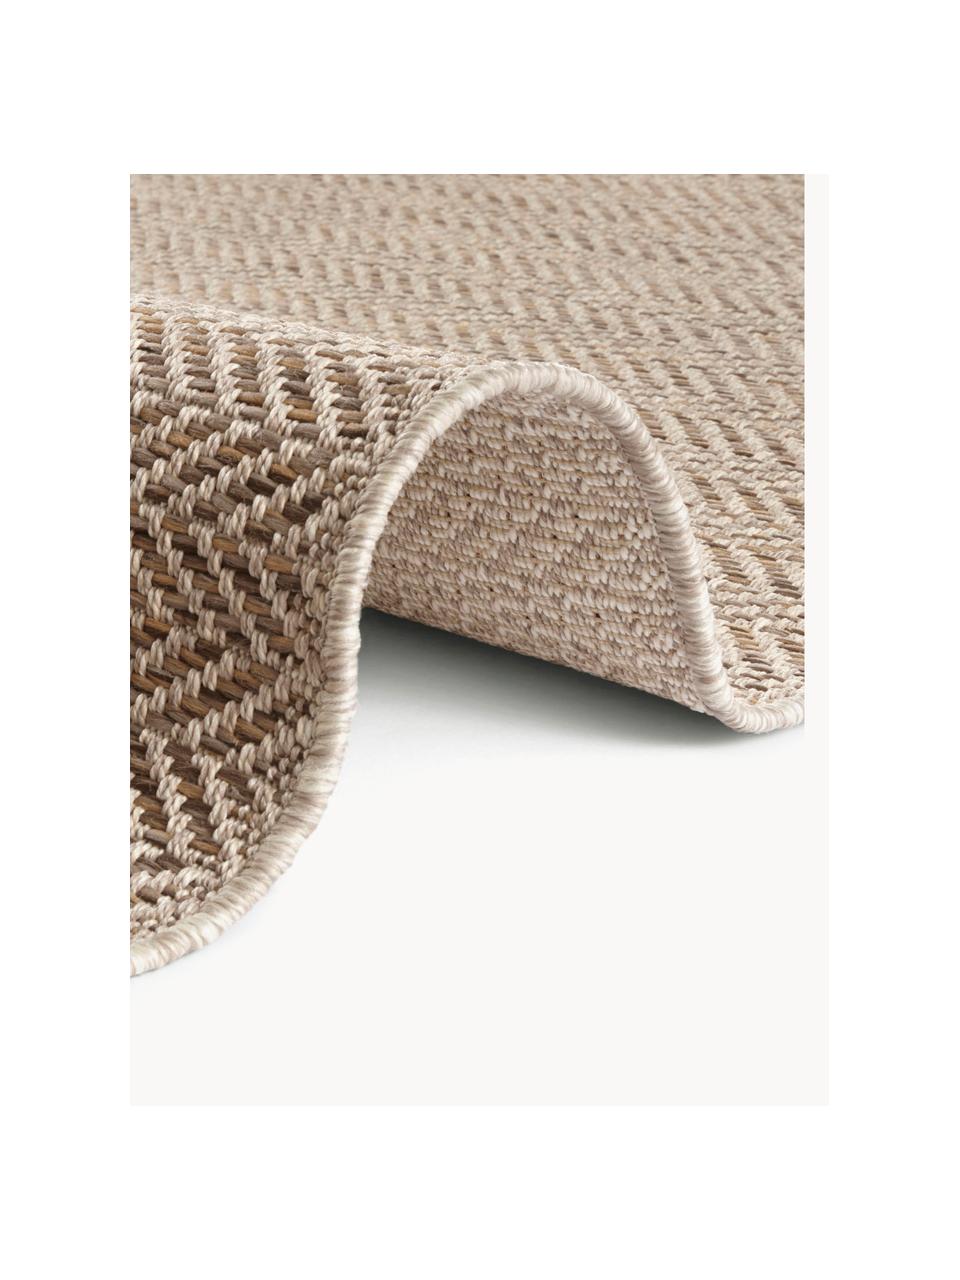 Interiérový/exteriérový koberec Caen, 100 % polypropylen

Materiál použitý v tomto produktu byl testován na škodlivé látky a certifikován podle STANDARD 100 od OEKO-TEX® 1803035, OEKO-TEX Service GmbH., Odstíny béžové, Š 80 cm, D 150 cm (velikost XS)